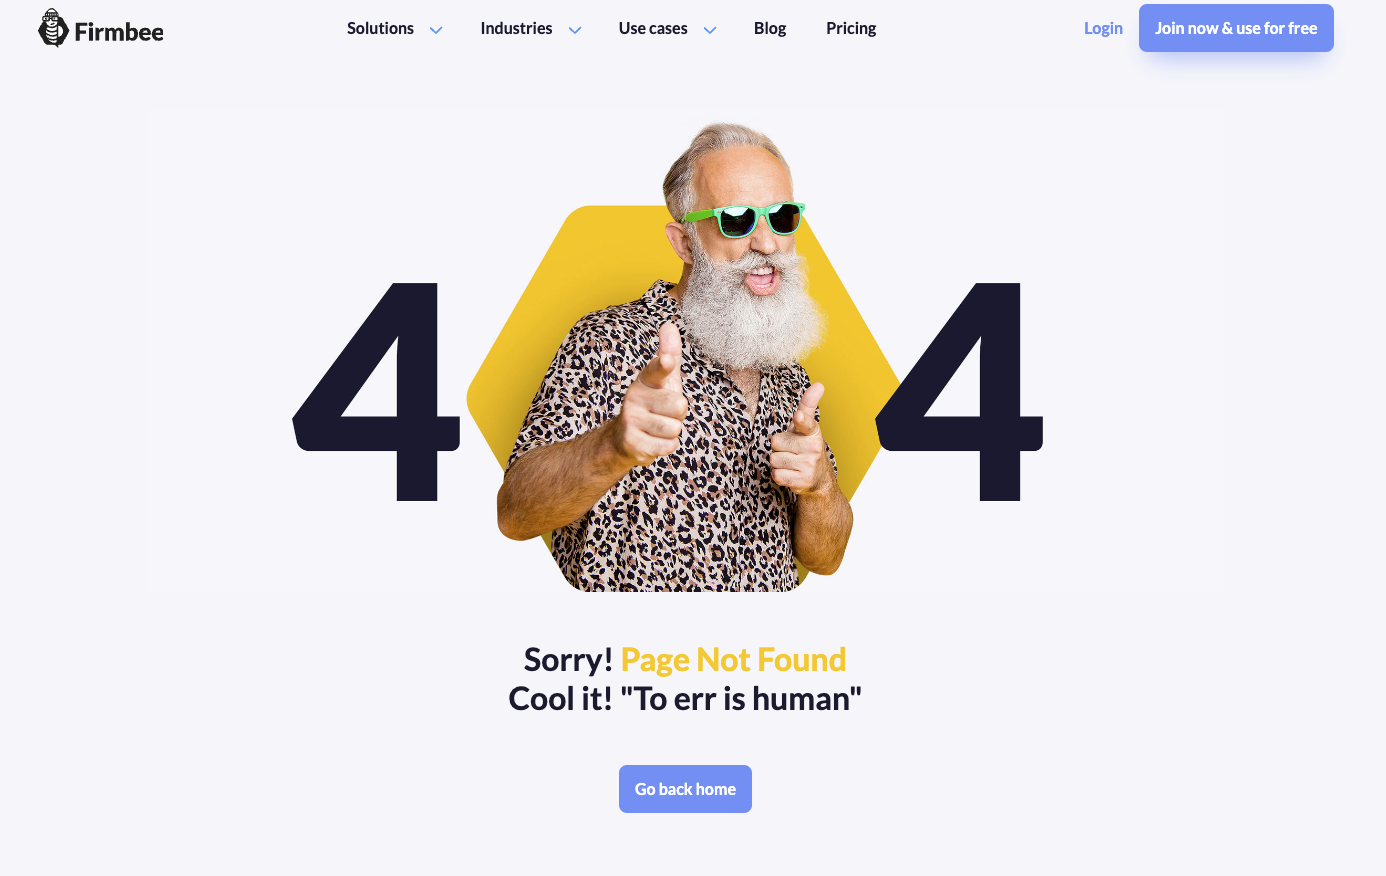 Beispiel einer 404-Fehler-Landingpage